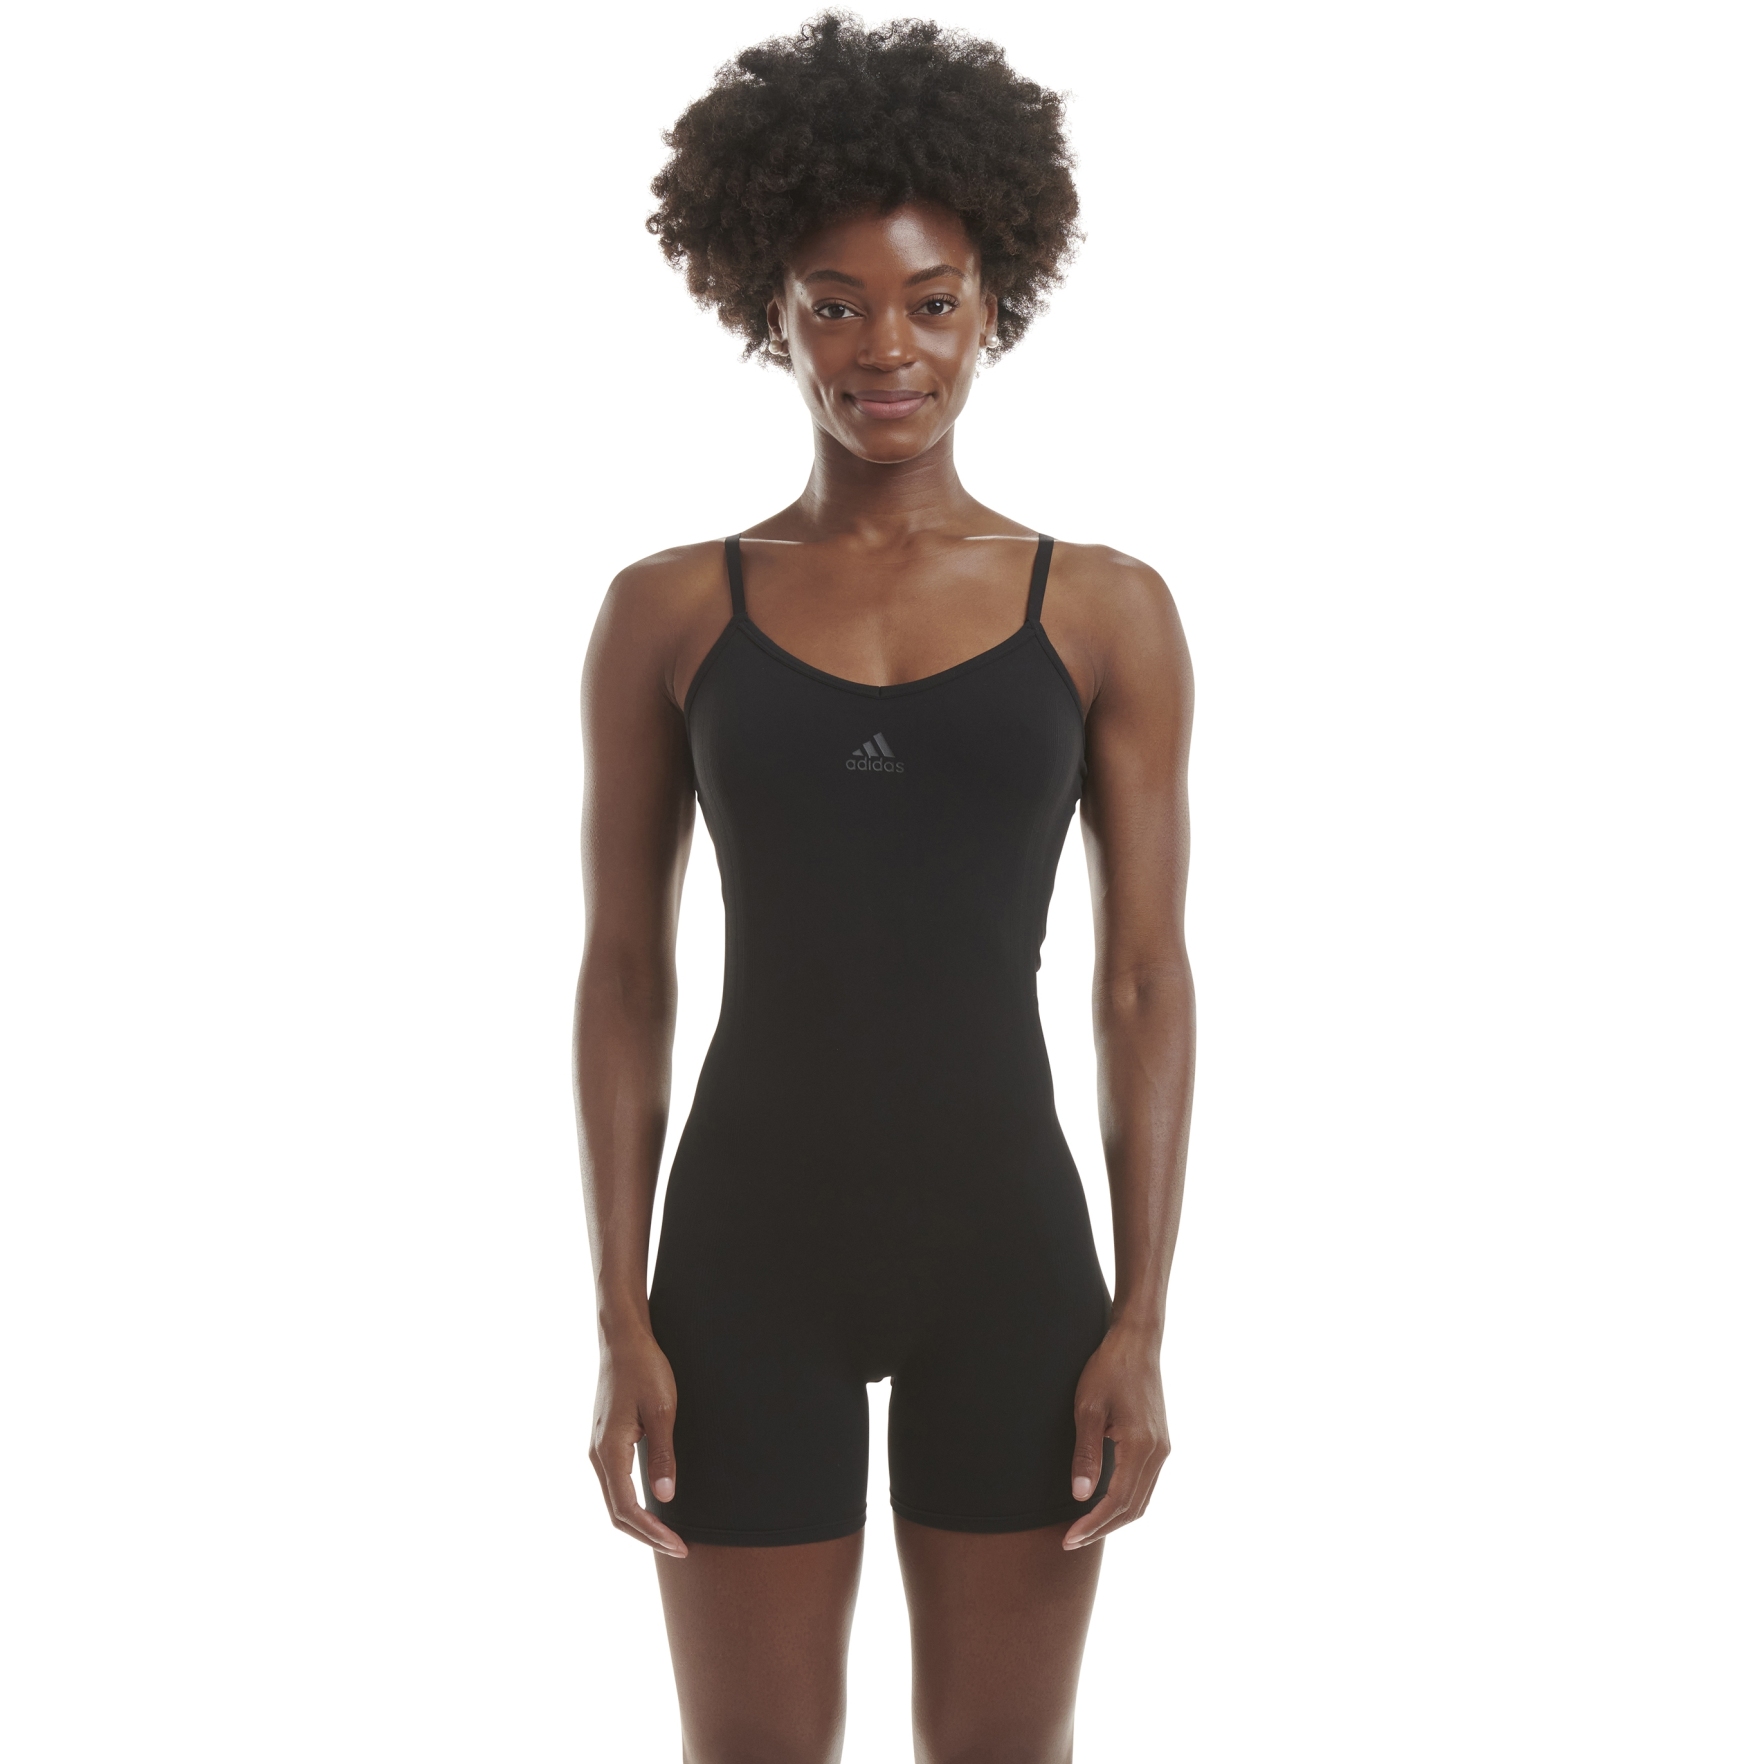 Produktbild von adidas Sports Underwear 720 Seamless Bodysuit Damen - 000-black